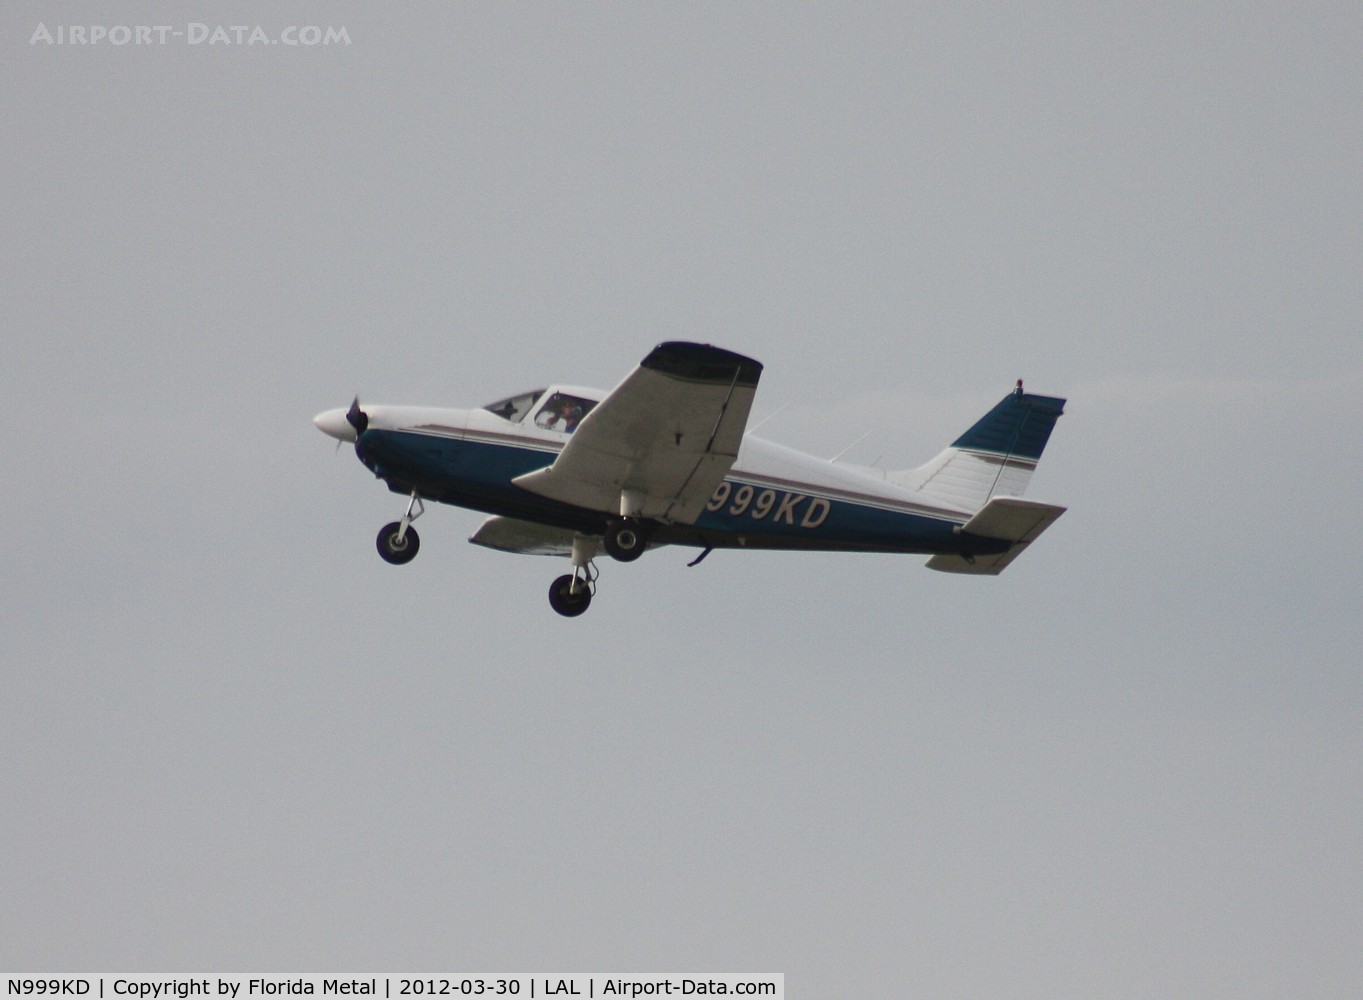 N999KD, Piper PA-28-181 C/N 28-7790181, PA-28-181